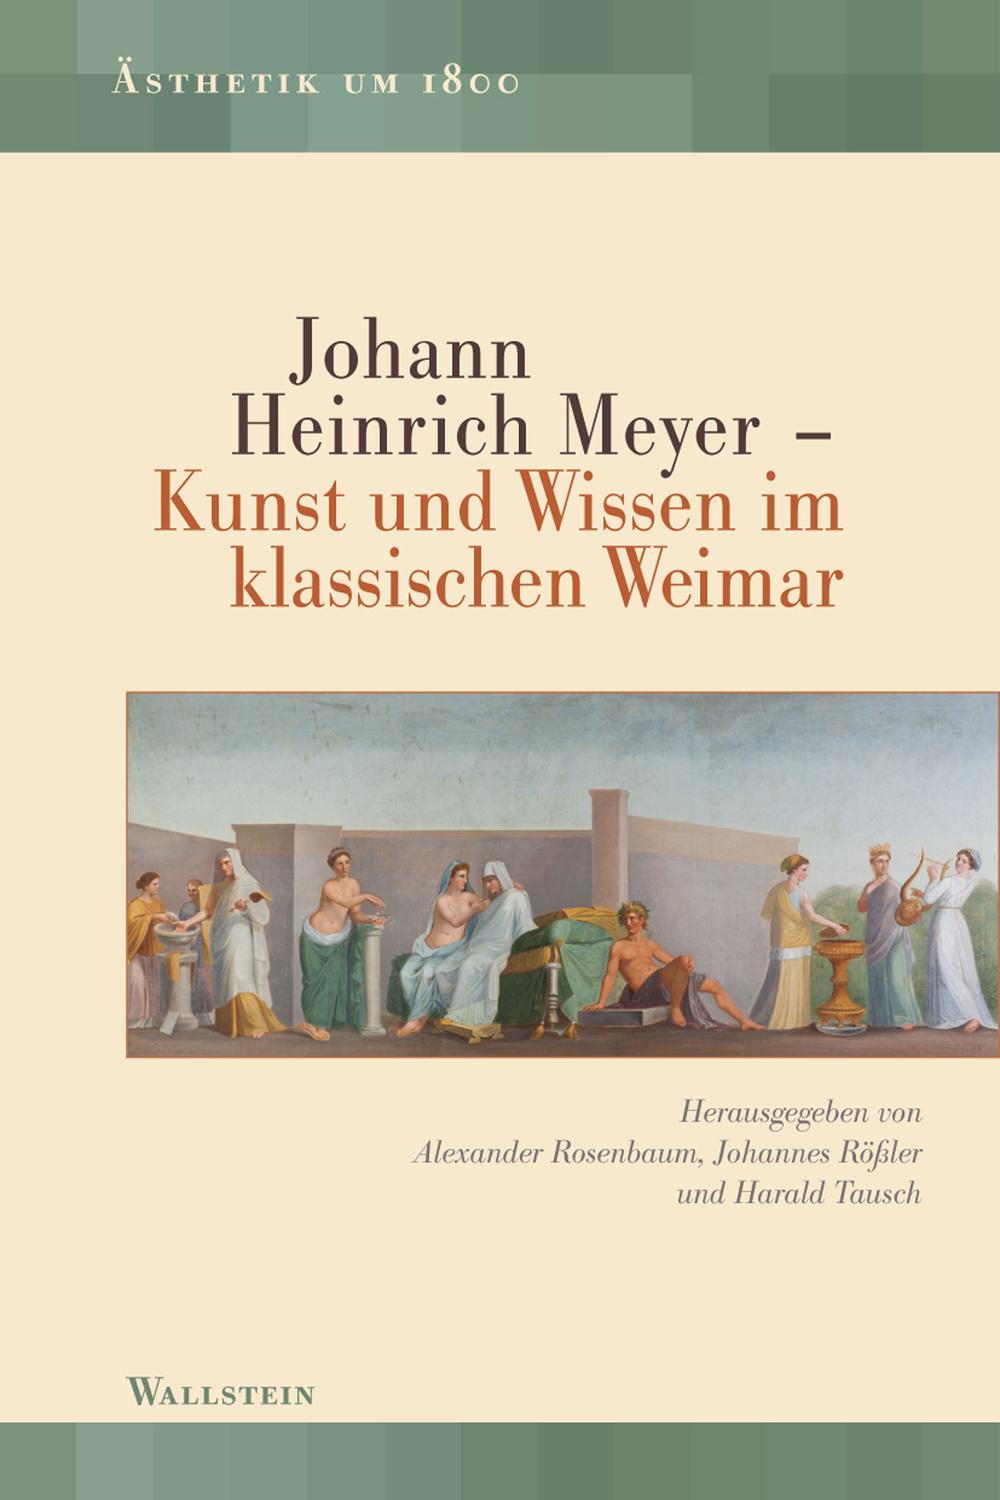 Johann Heinrich Meyer - Alexander Rosenbaum, Johannes Rößler, Harald Tausch